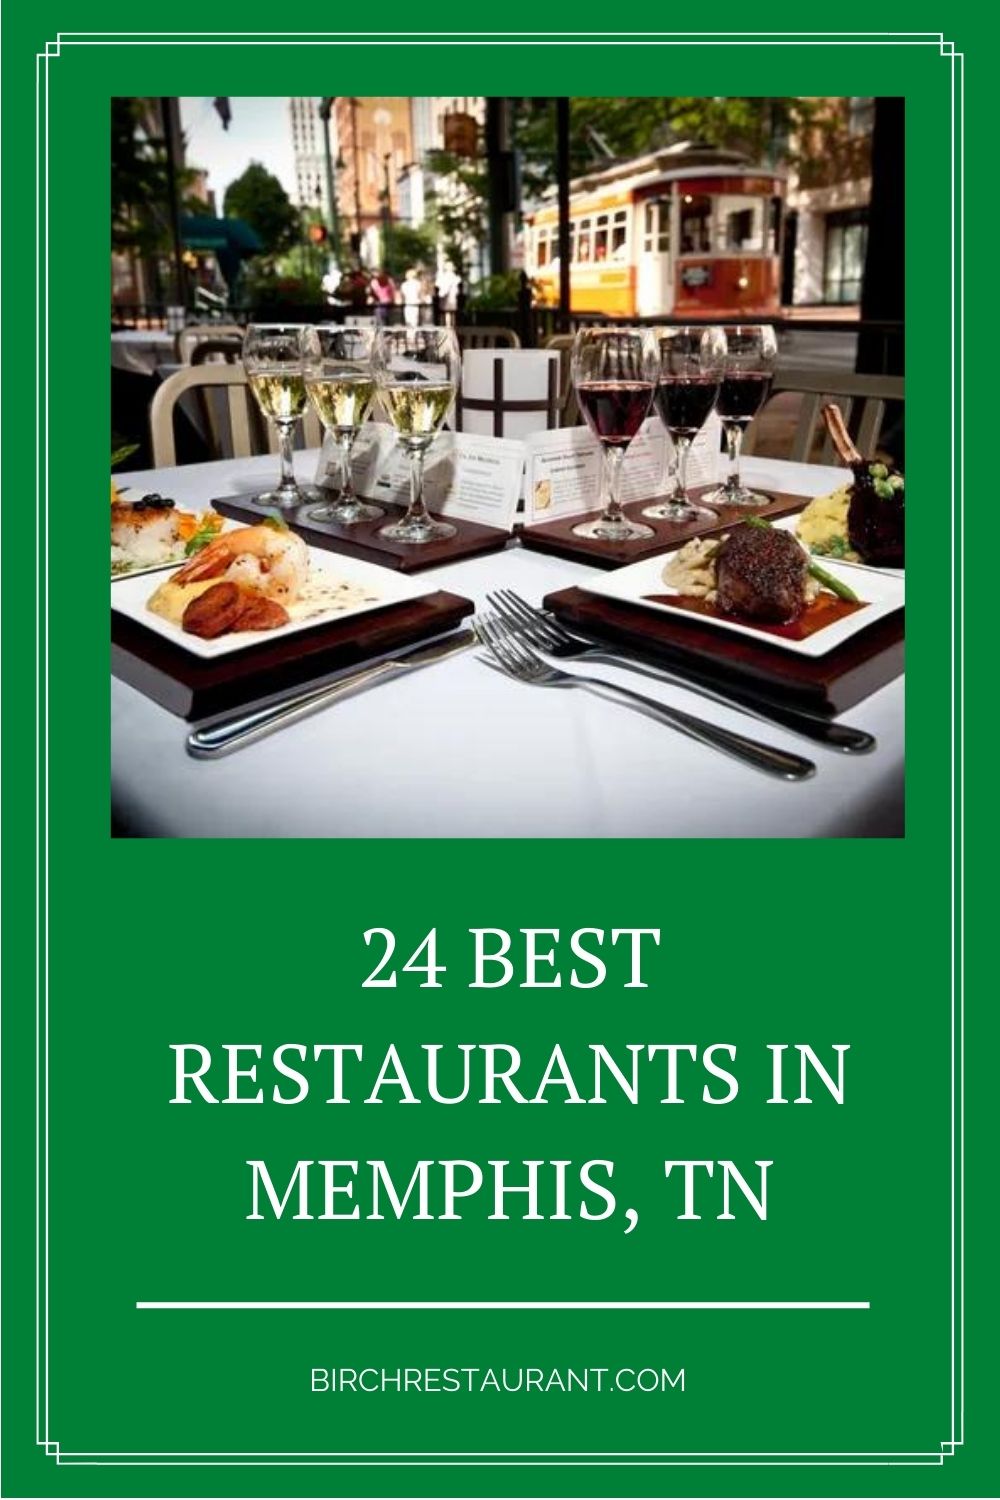 Best Restaurants in Memphis